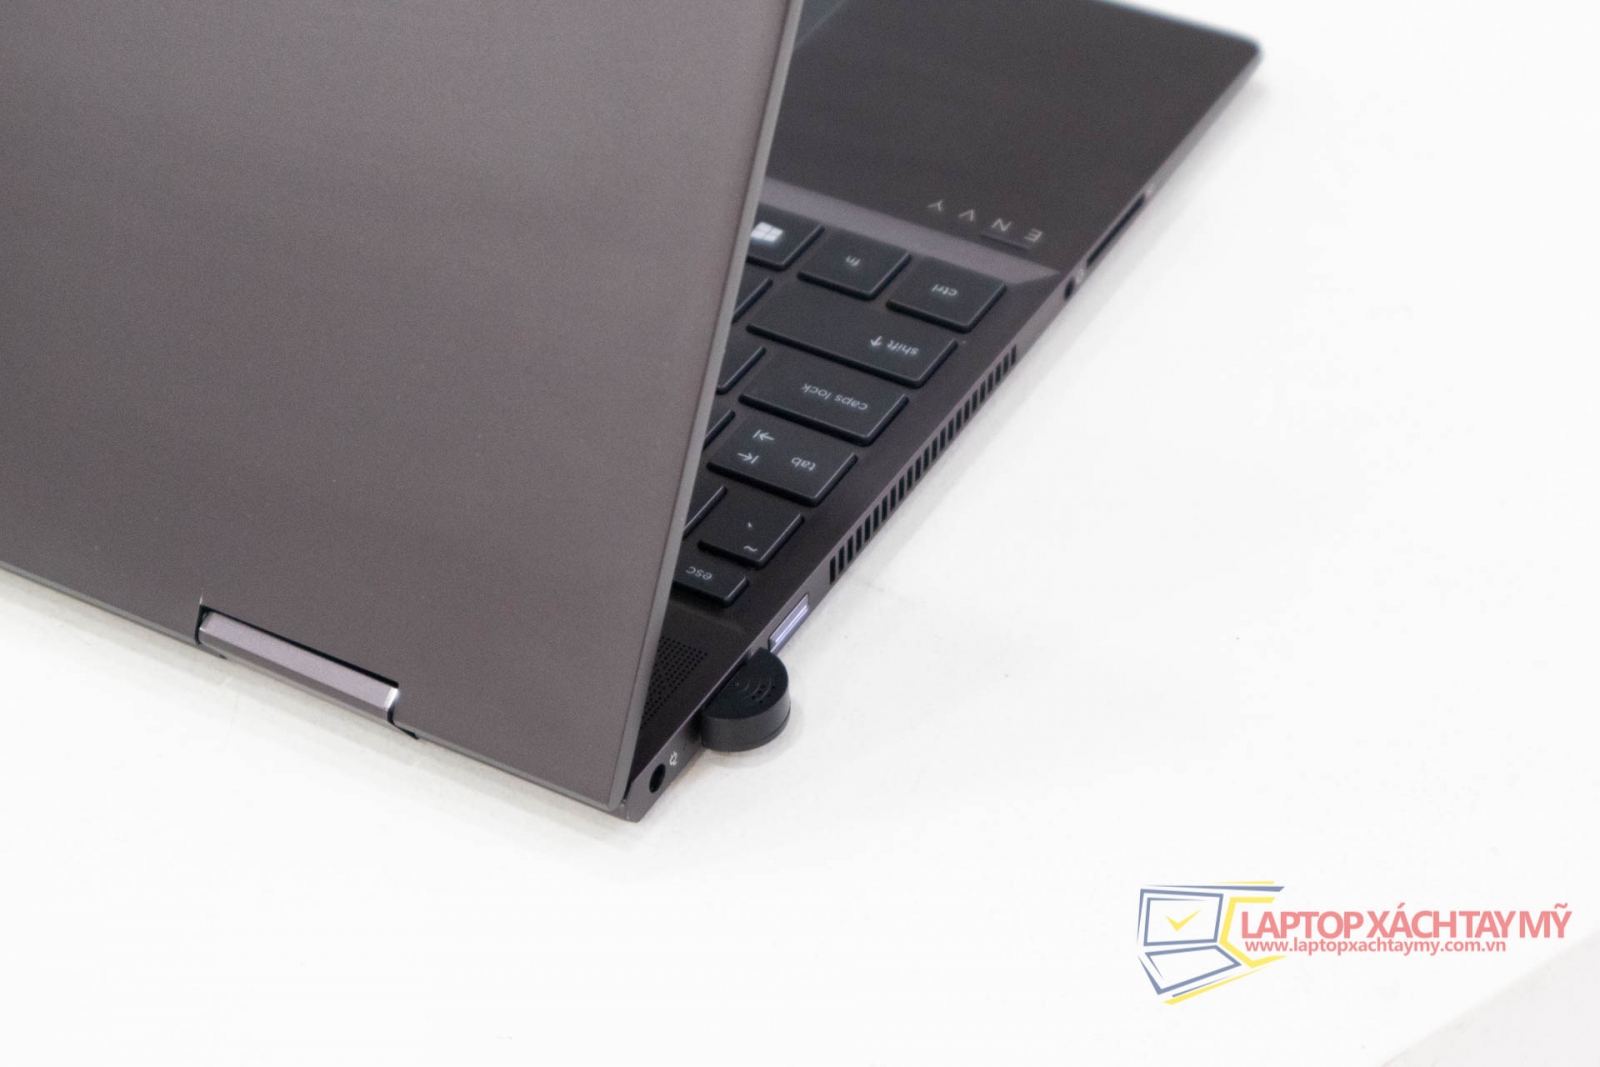 Laptop HP Envy 15 X360 - AMD Ryzen 5 3500U, 8G Ram, 256G SSD